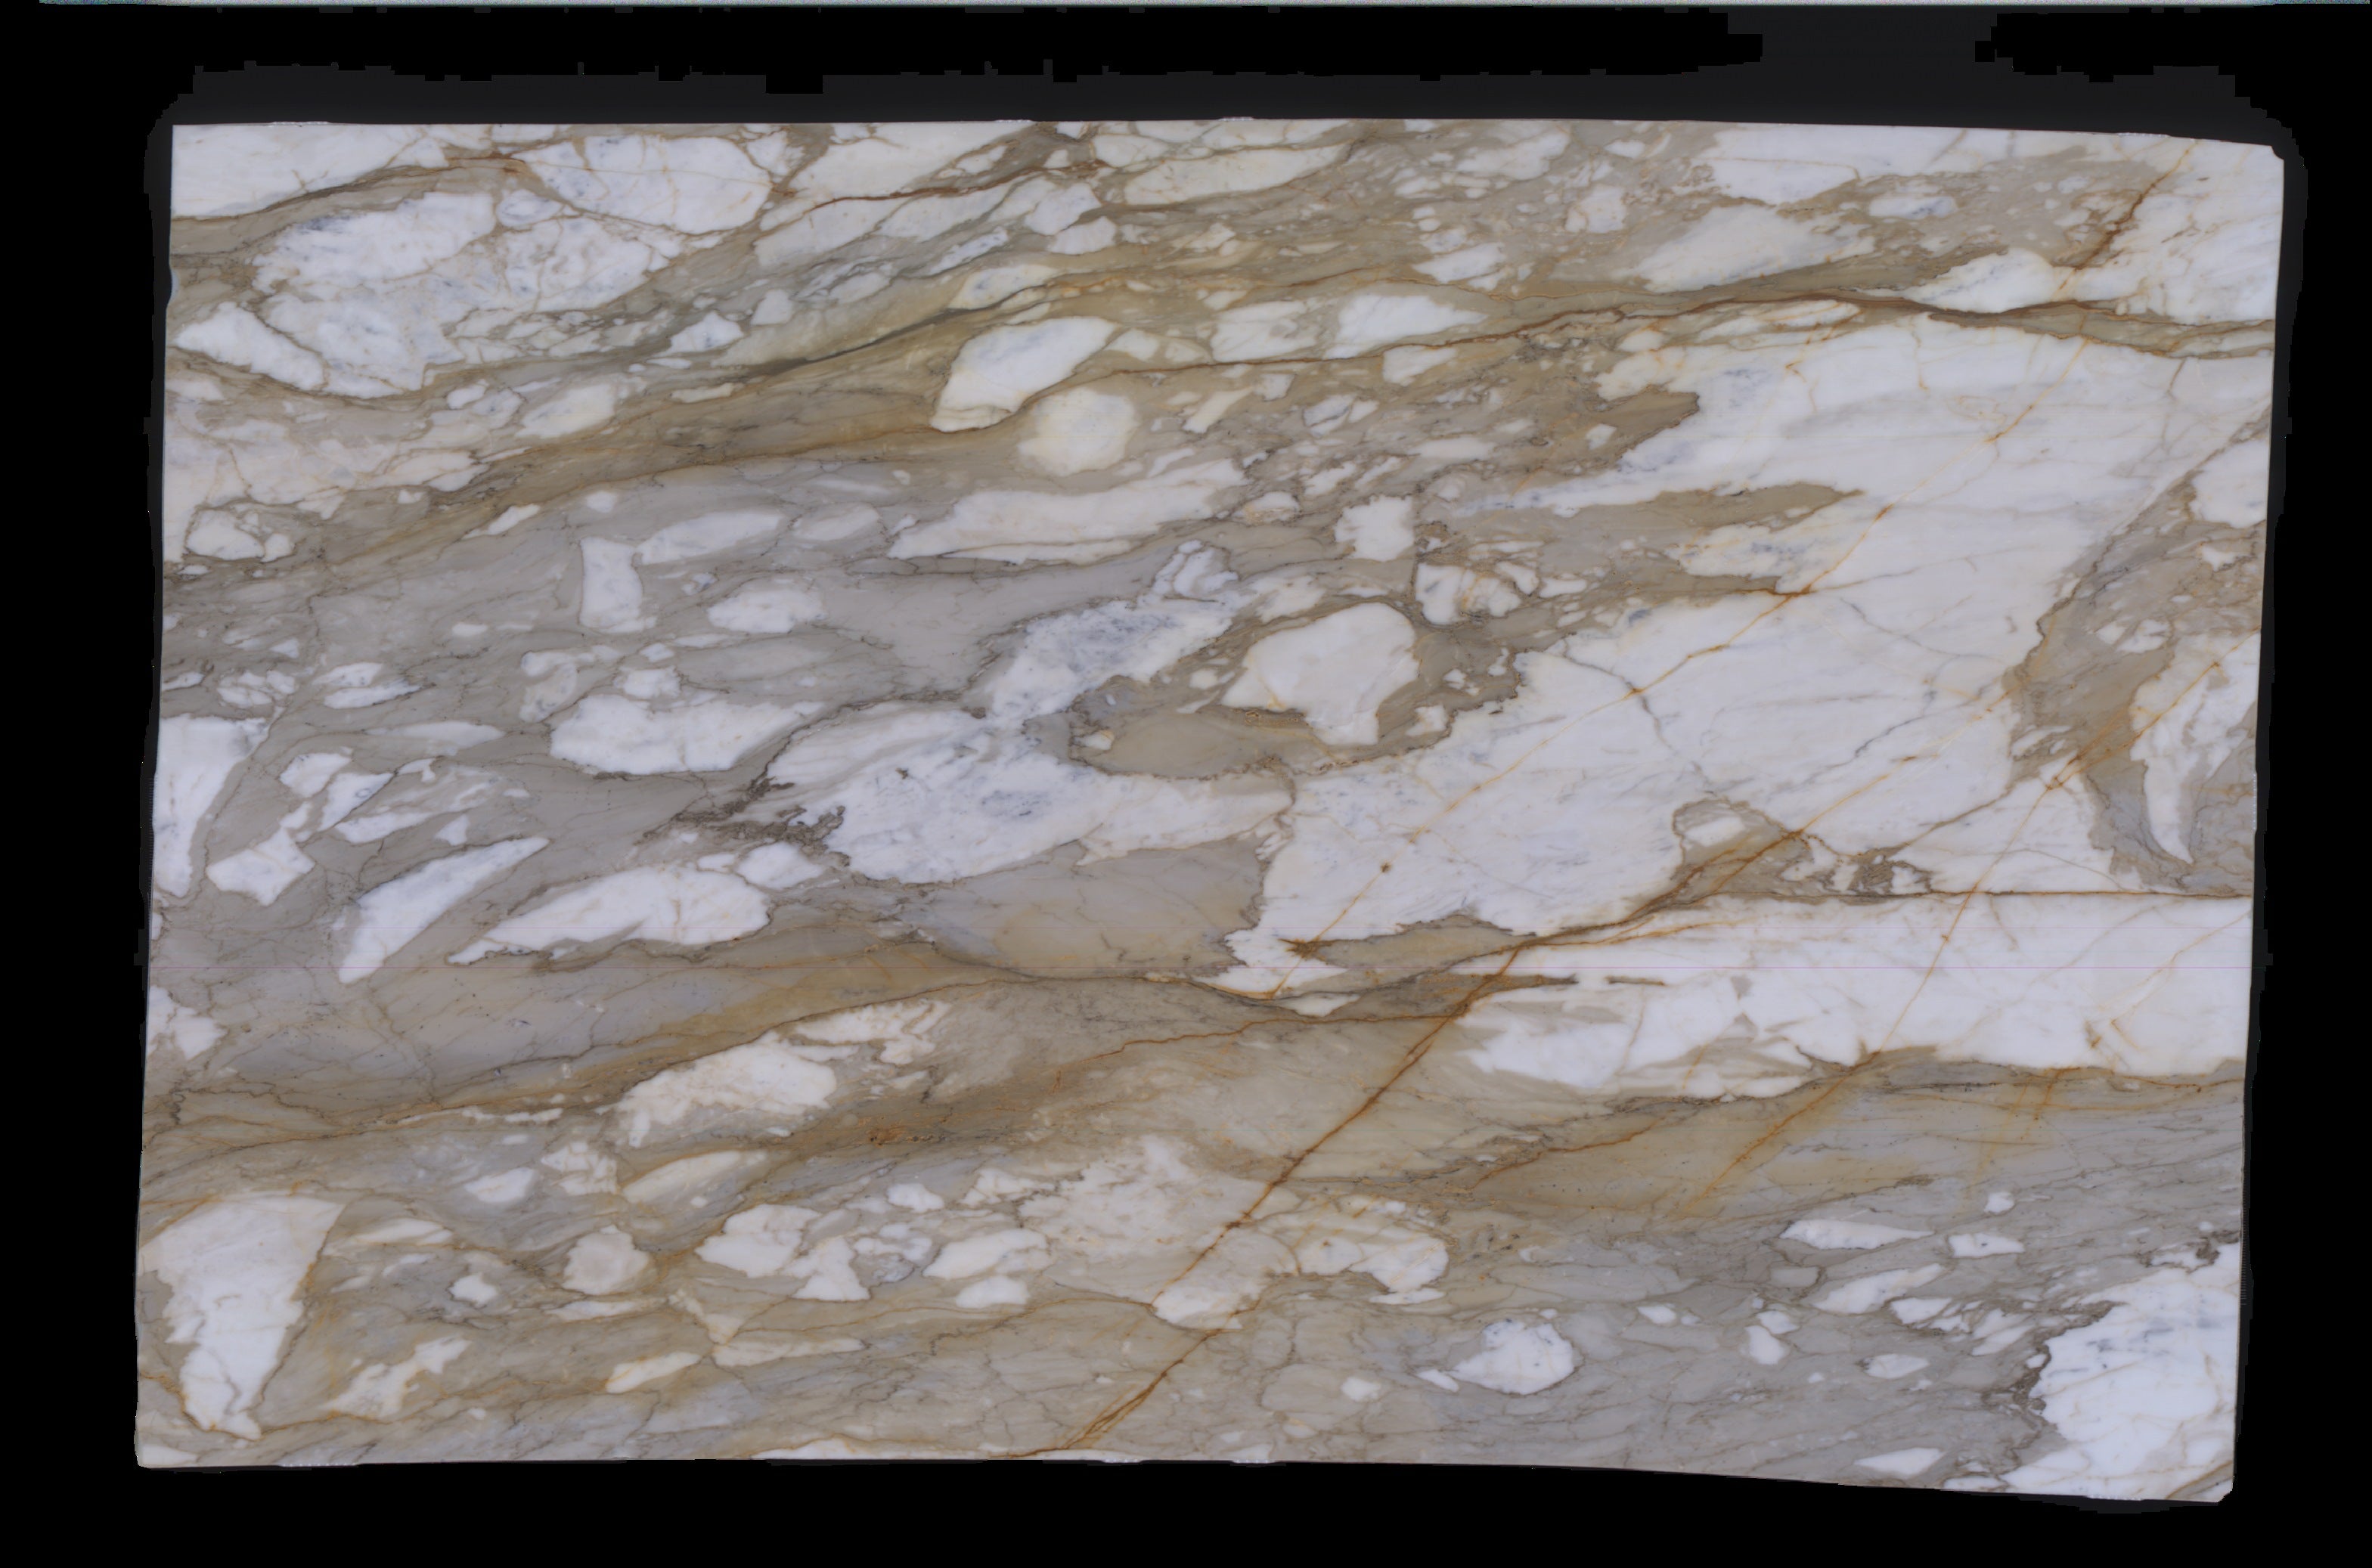  Calacatta Macchia Vecchia Marble Slab 3/4 - 953#42 -  VS 71x112 